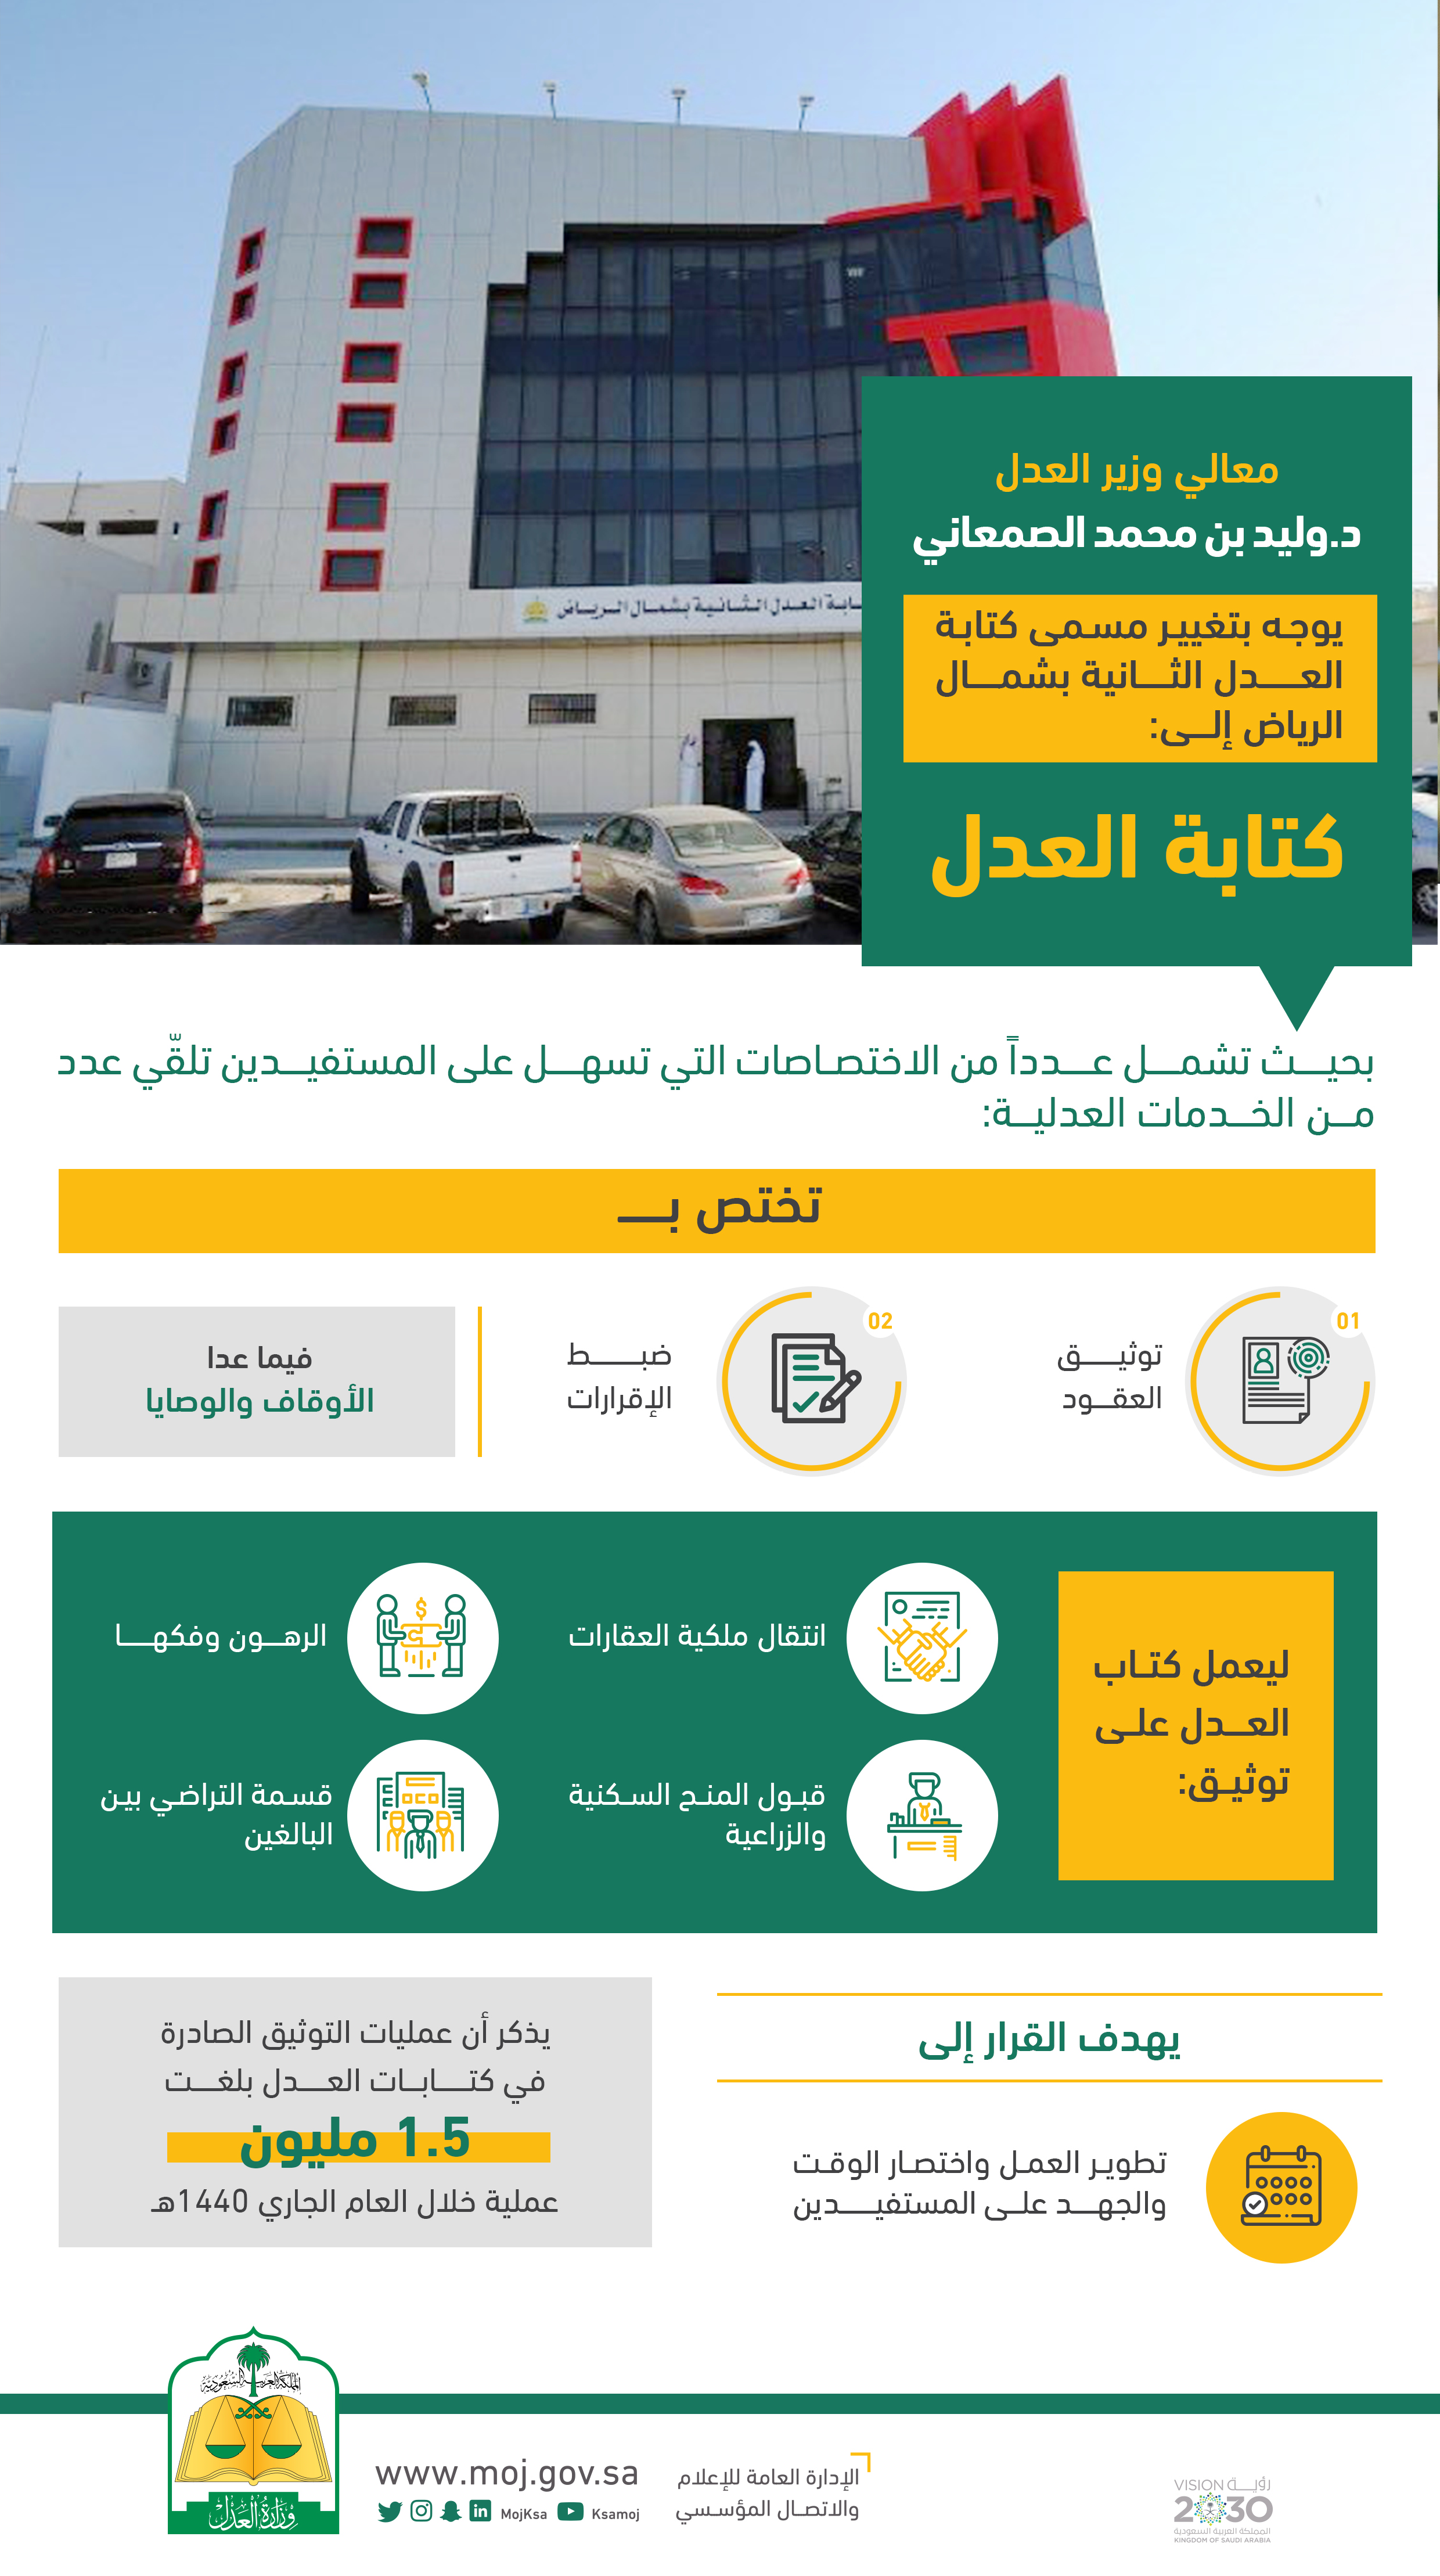 الوزير الصمعاني يوجه بالتوسع في خدمات كتابة عدل شمال الرياض